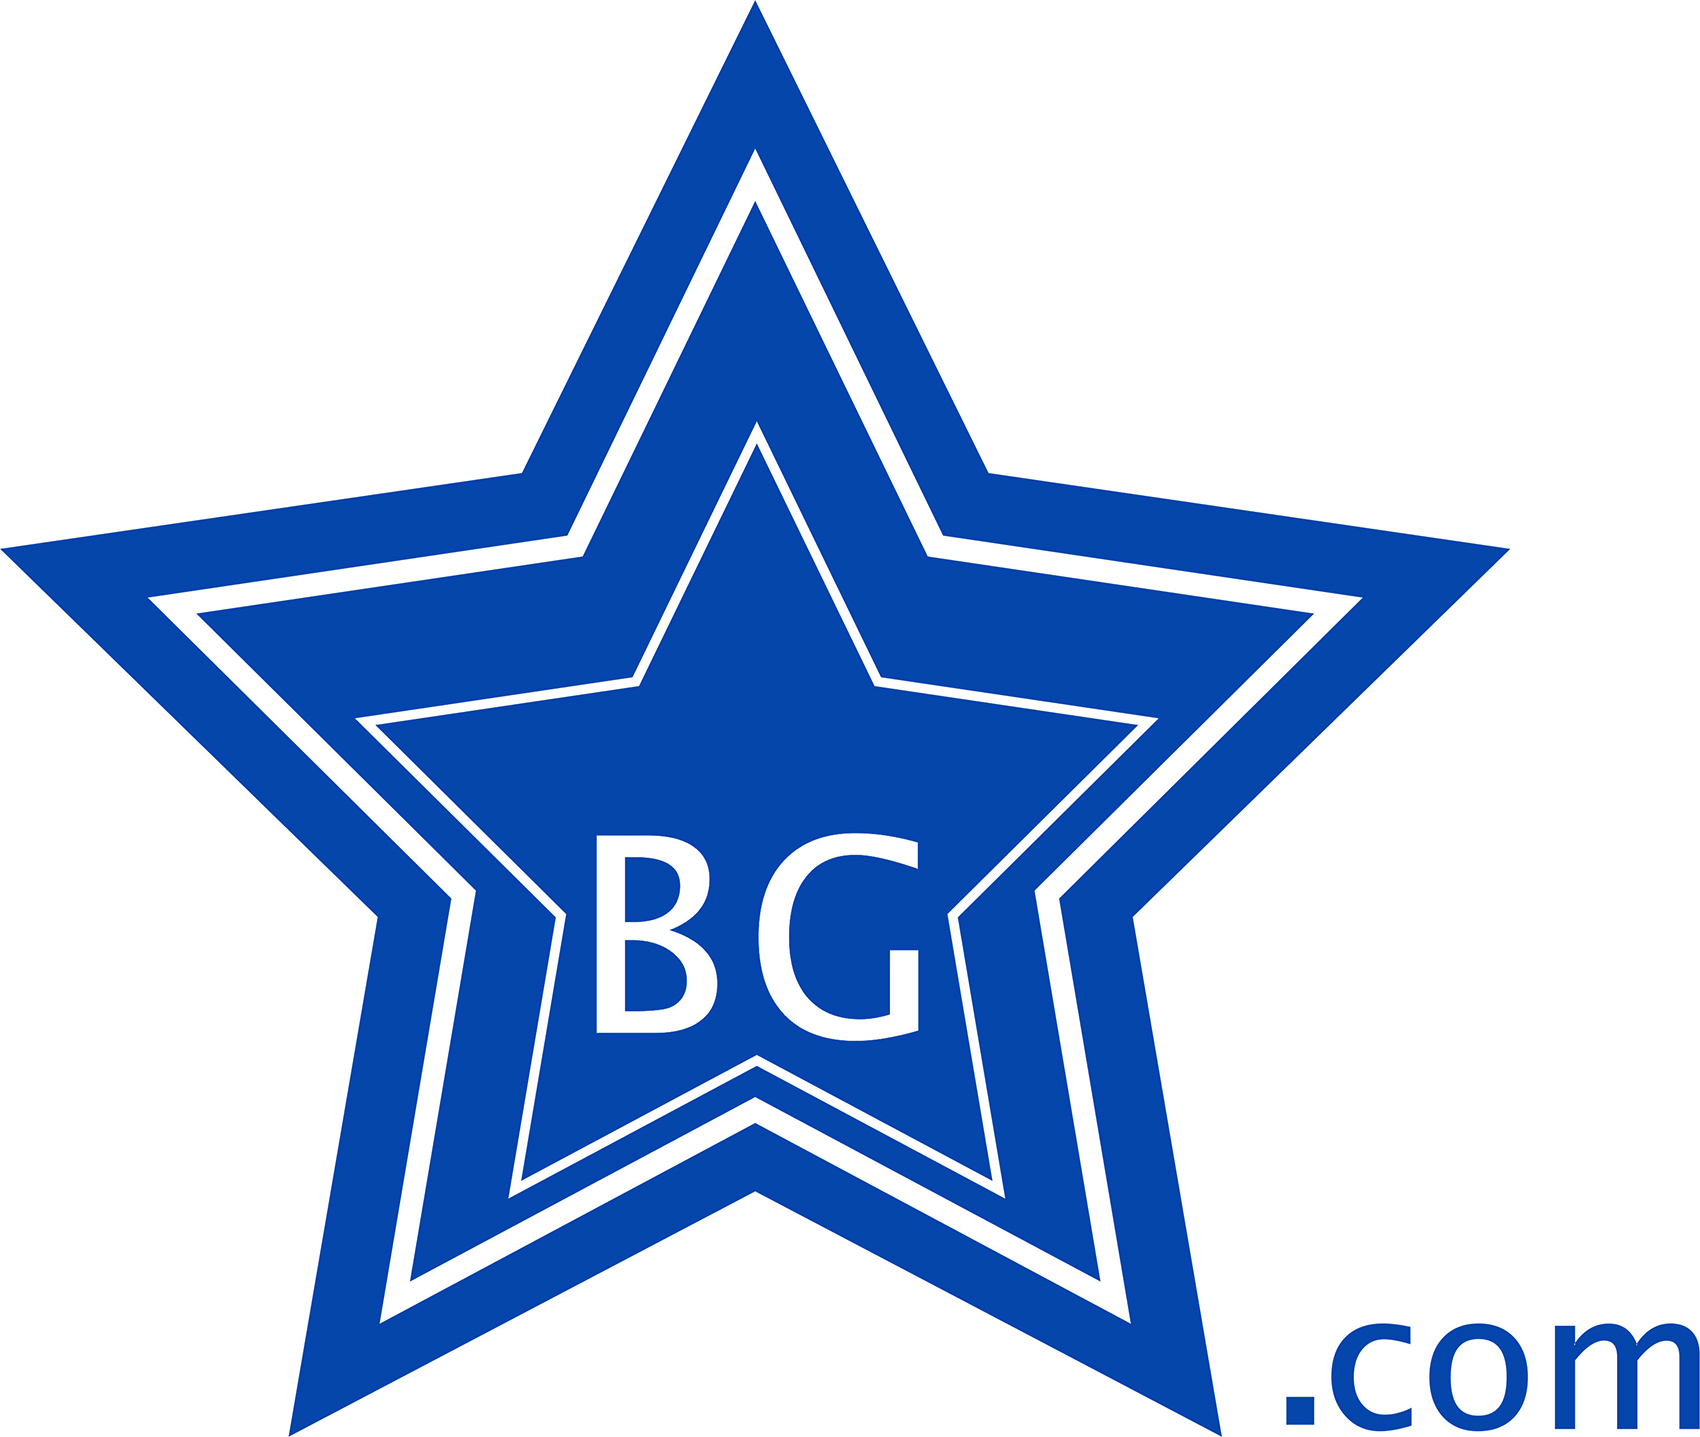 STAR-BG.COM